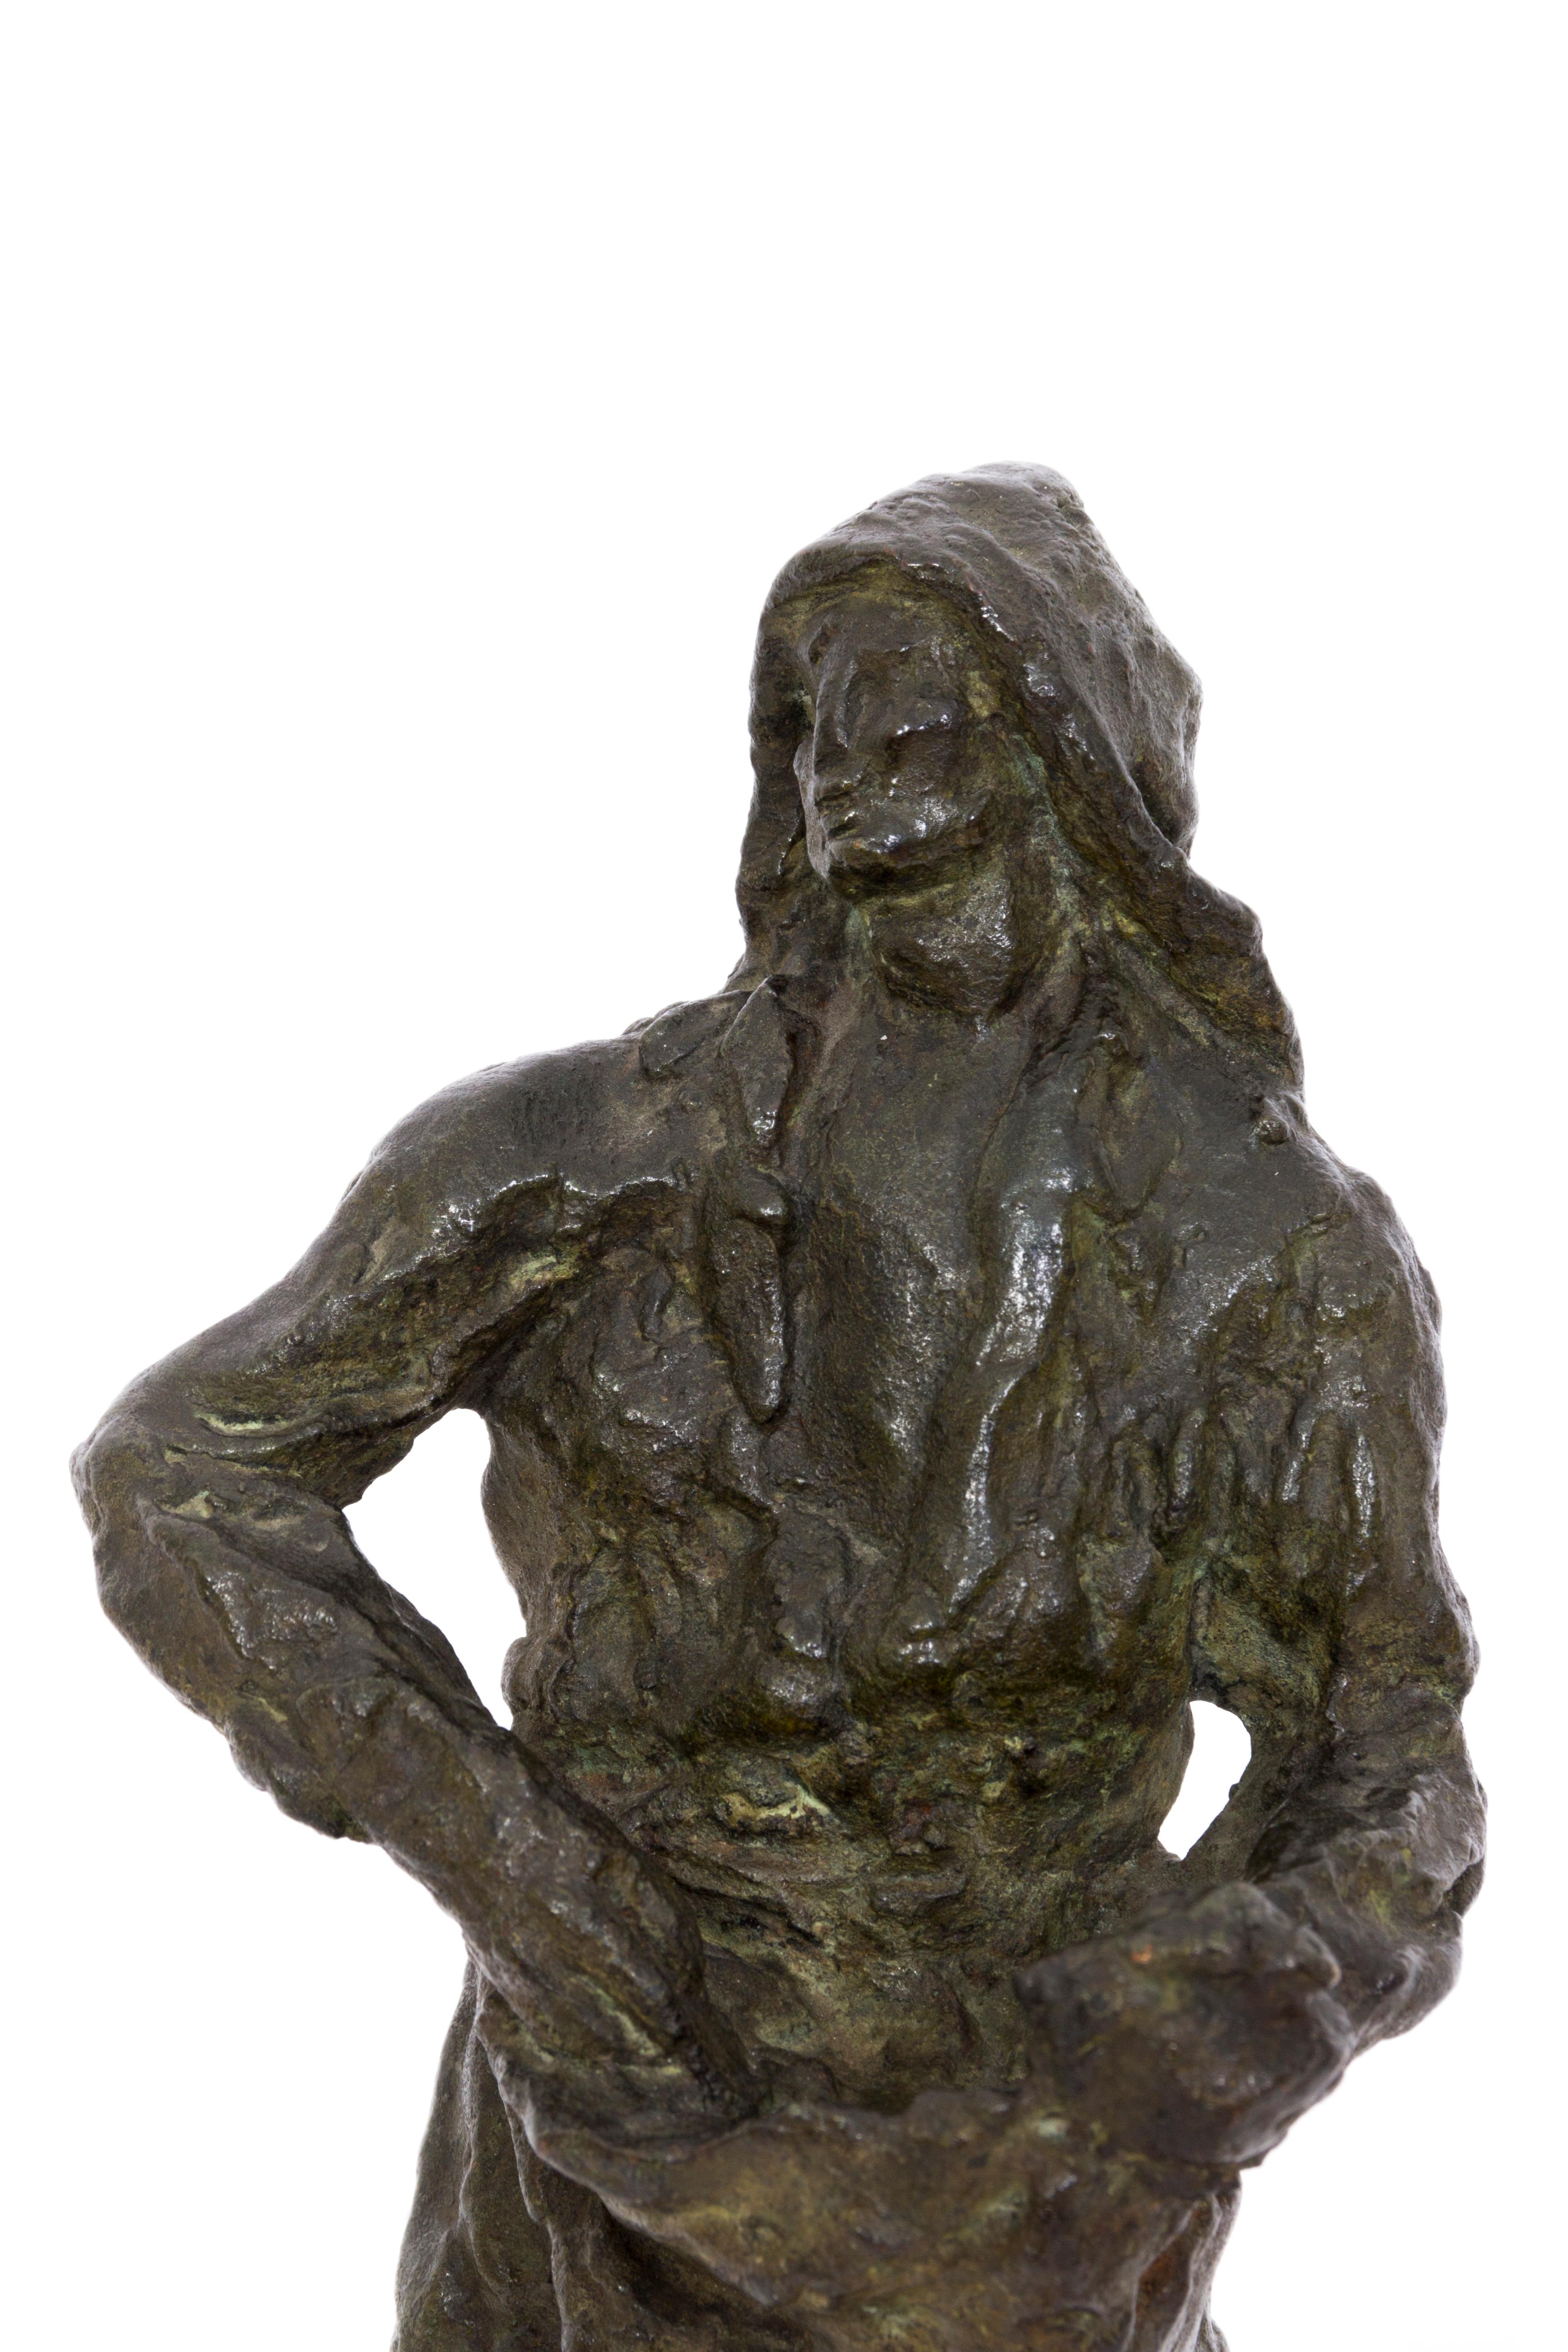 Sower - Sculpture by Jan Stursa